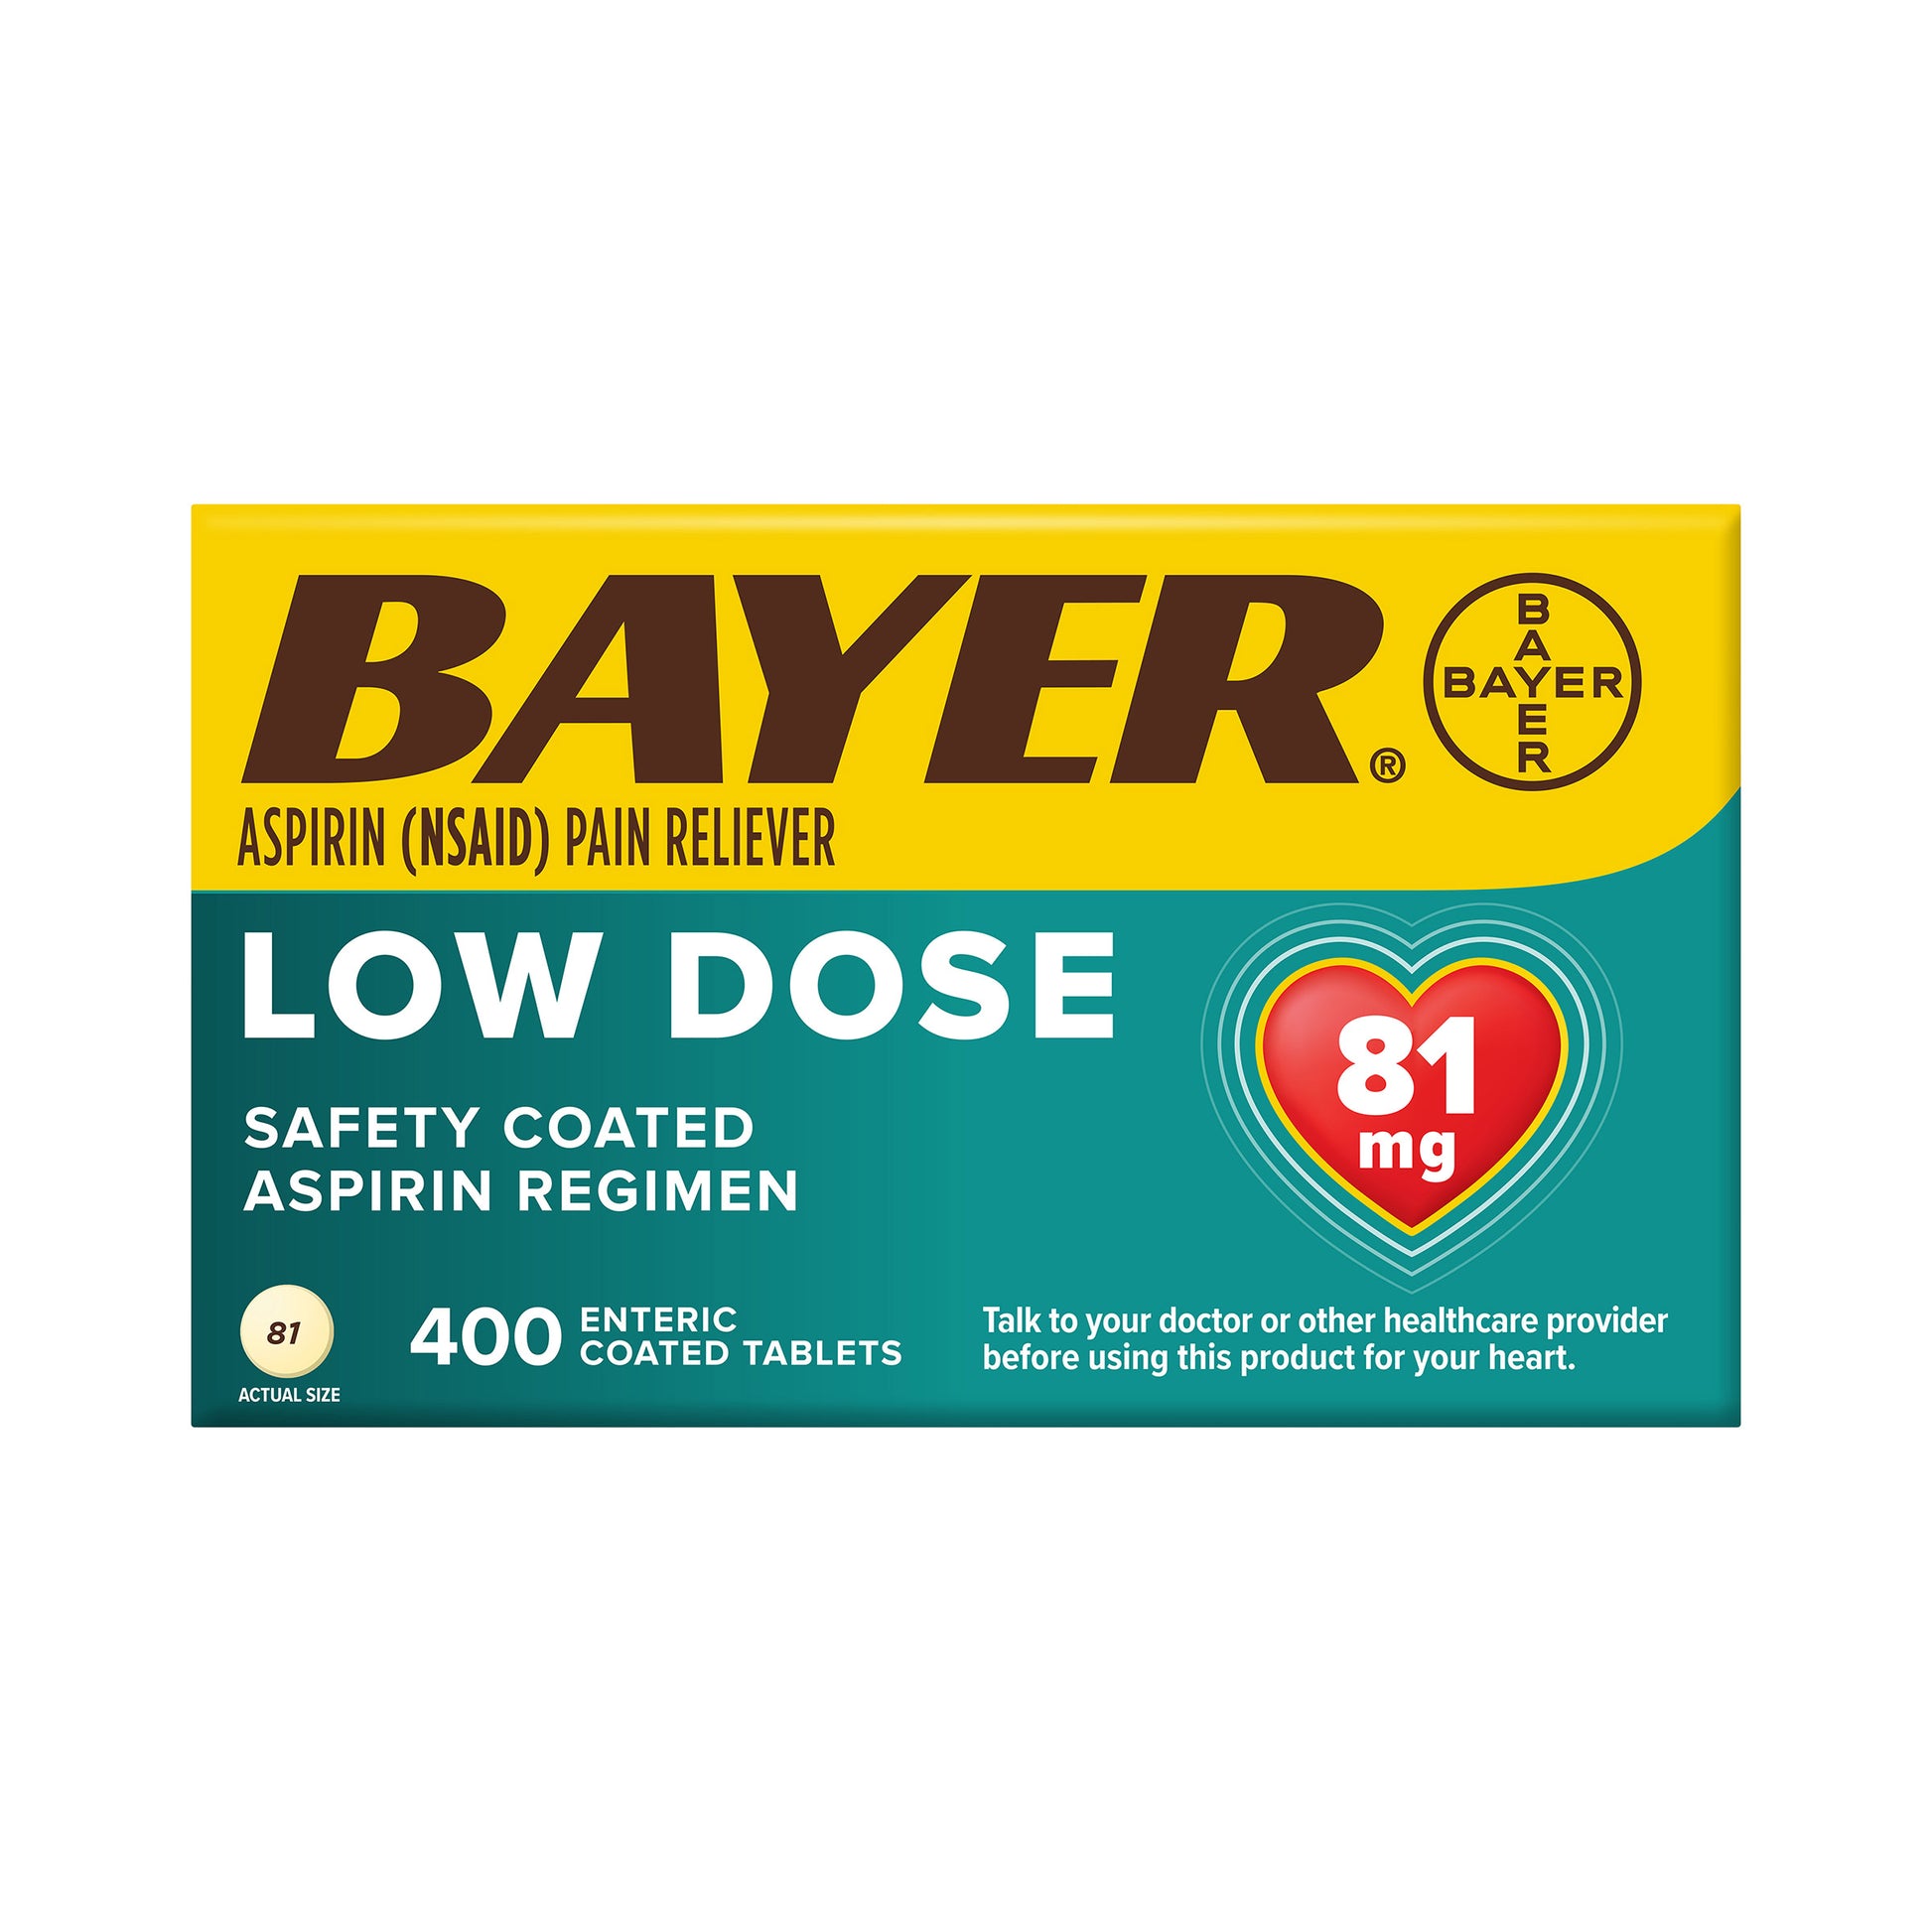 Aspirin Regimen Low Dose 81 Mg., 400 Enteric Coated Tablets